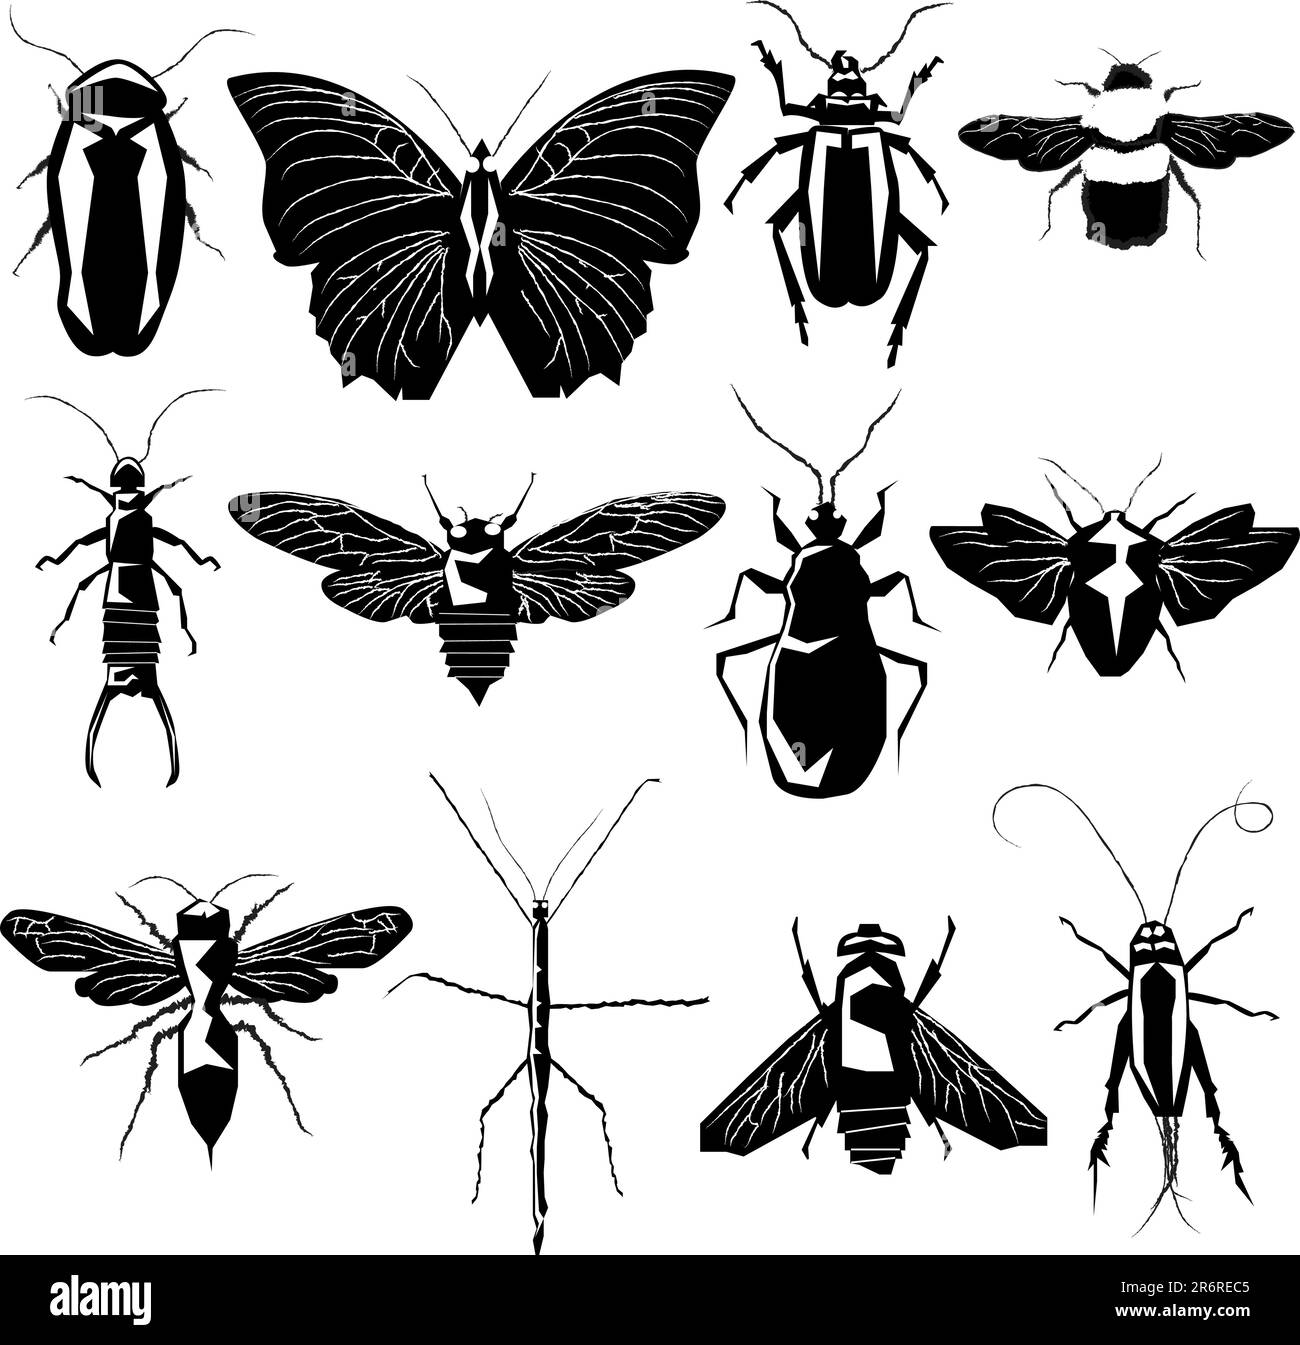 Raccolta di insetti e insetti in una silhouette vettoriale dettagliata Illustrazione Vettoriale